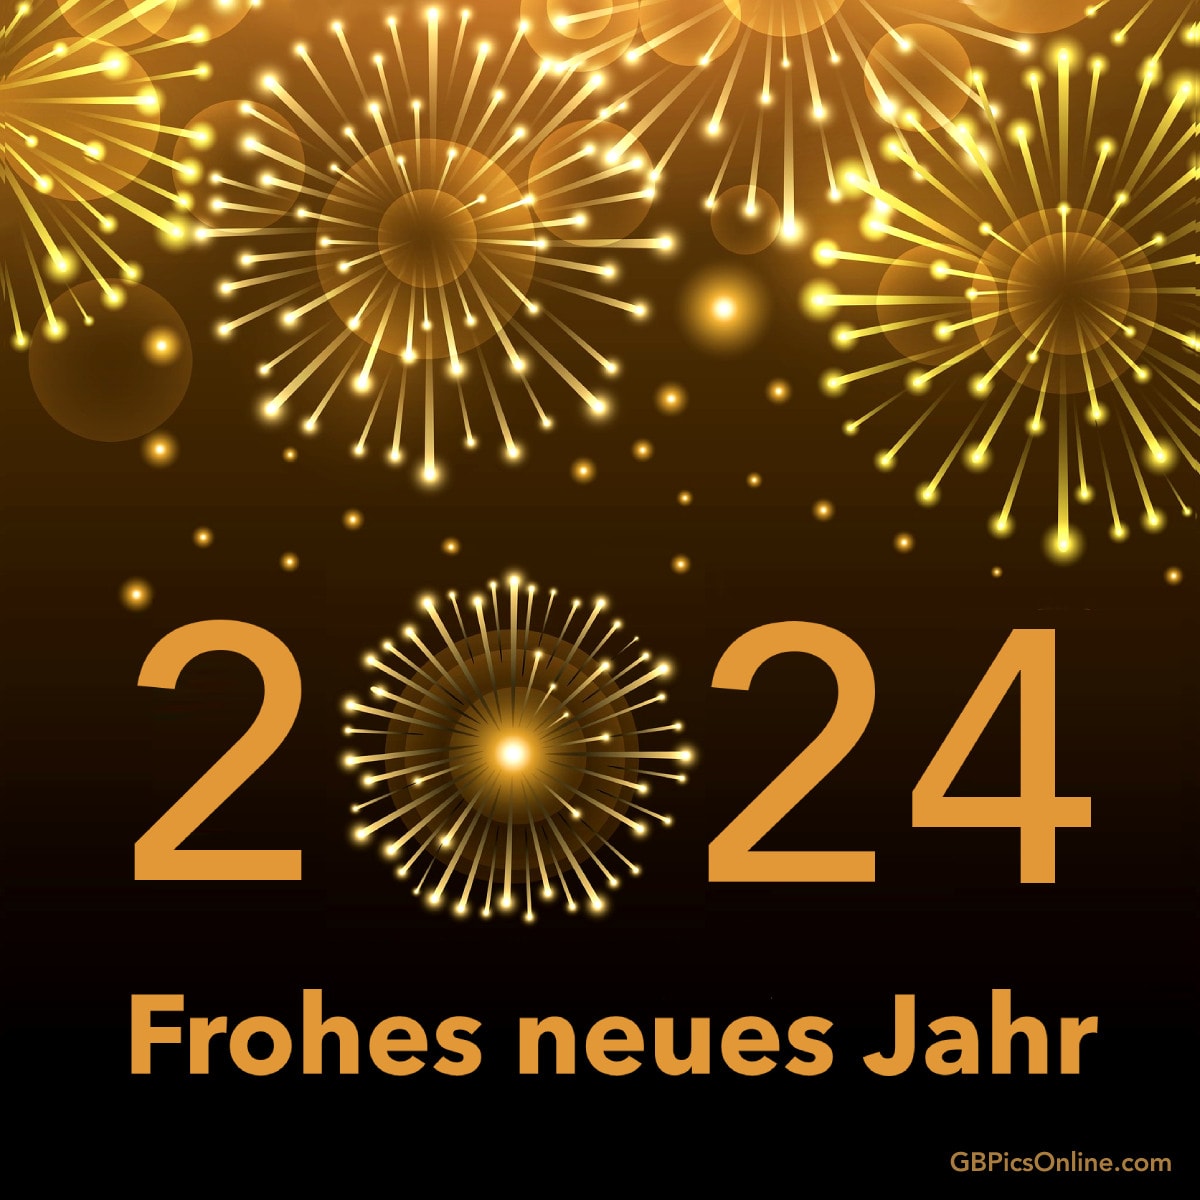 2024 Frohes neues Jahr.